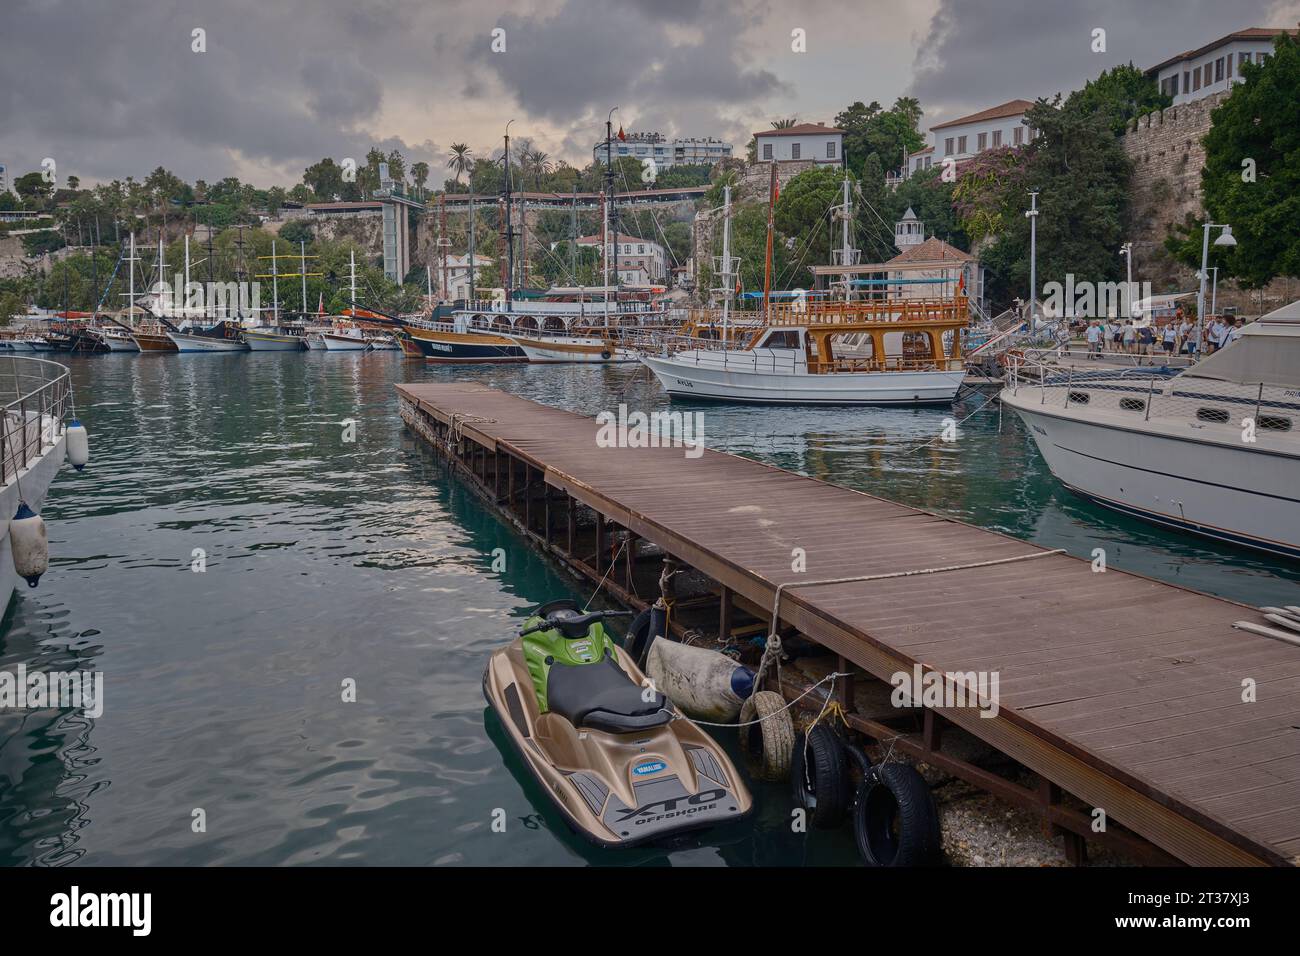 La vieille ville Marina au pied de la vieille ville de Kaleici à Antalya, Turquie. C'était le premier port d'Antalya. il est toujours actif avec les bateaux de pêche Banque D'Images